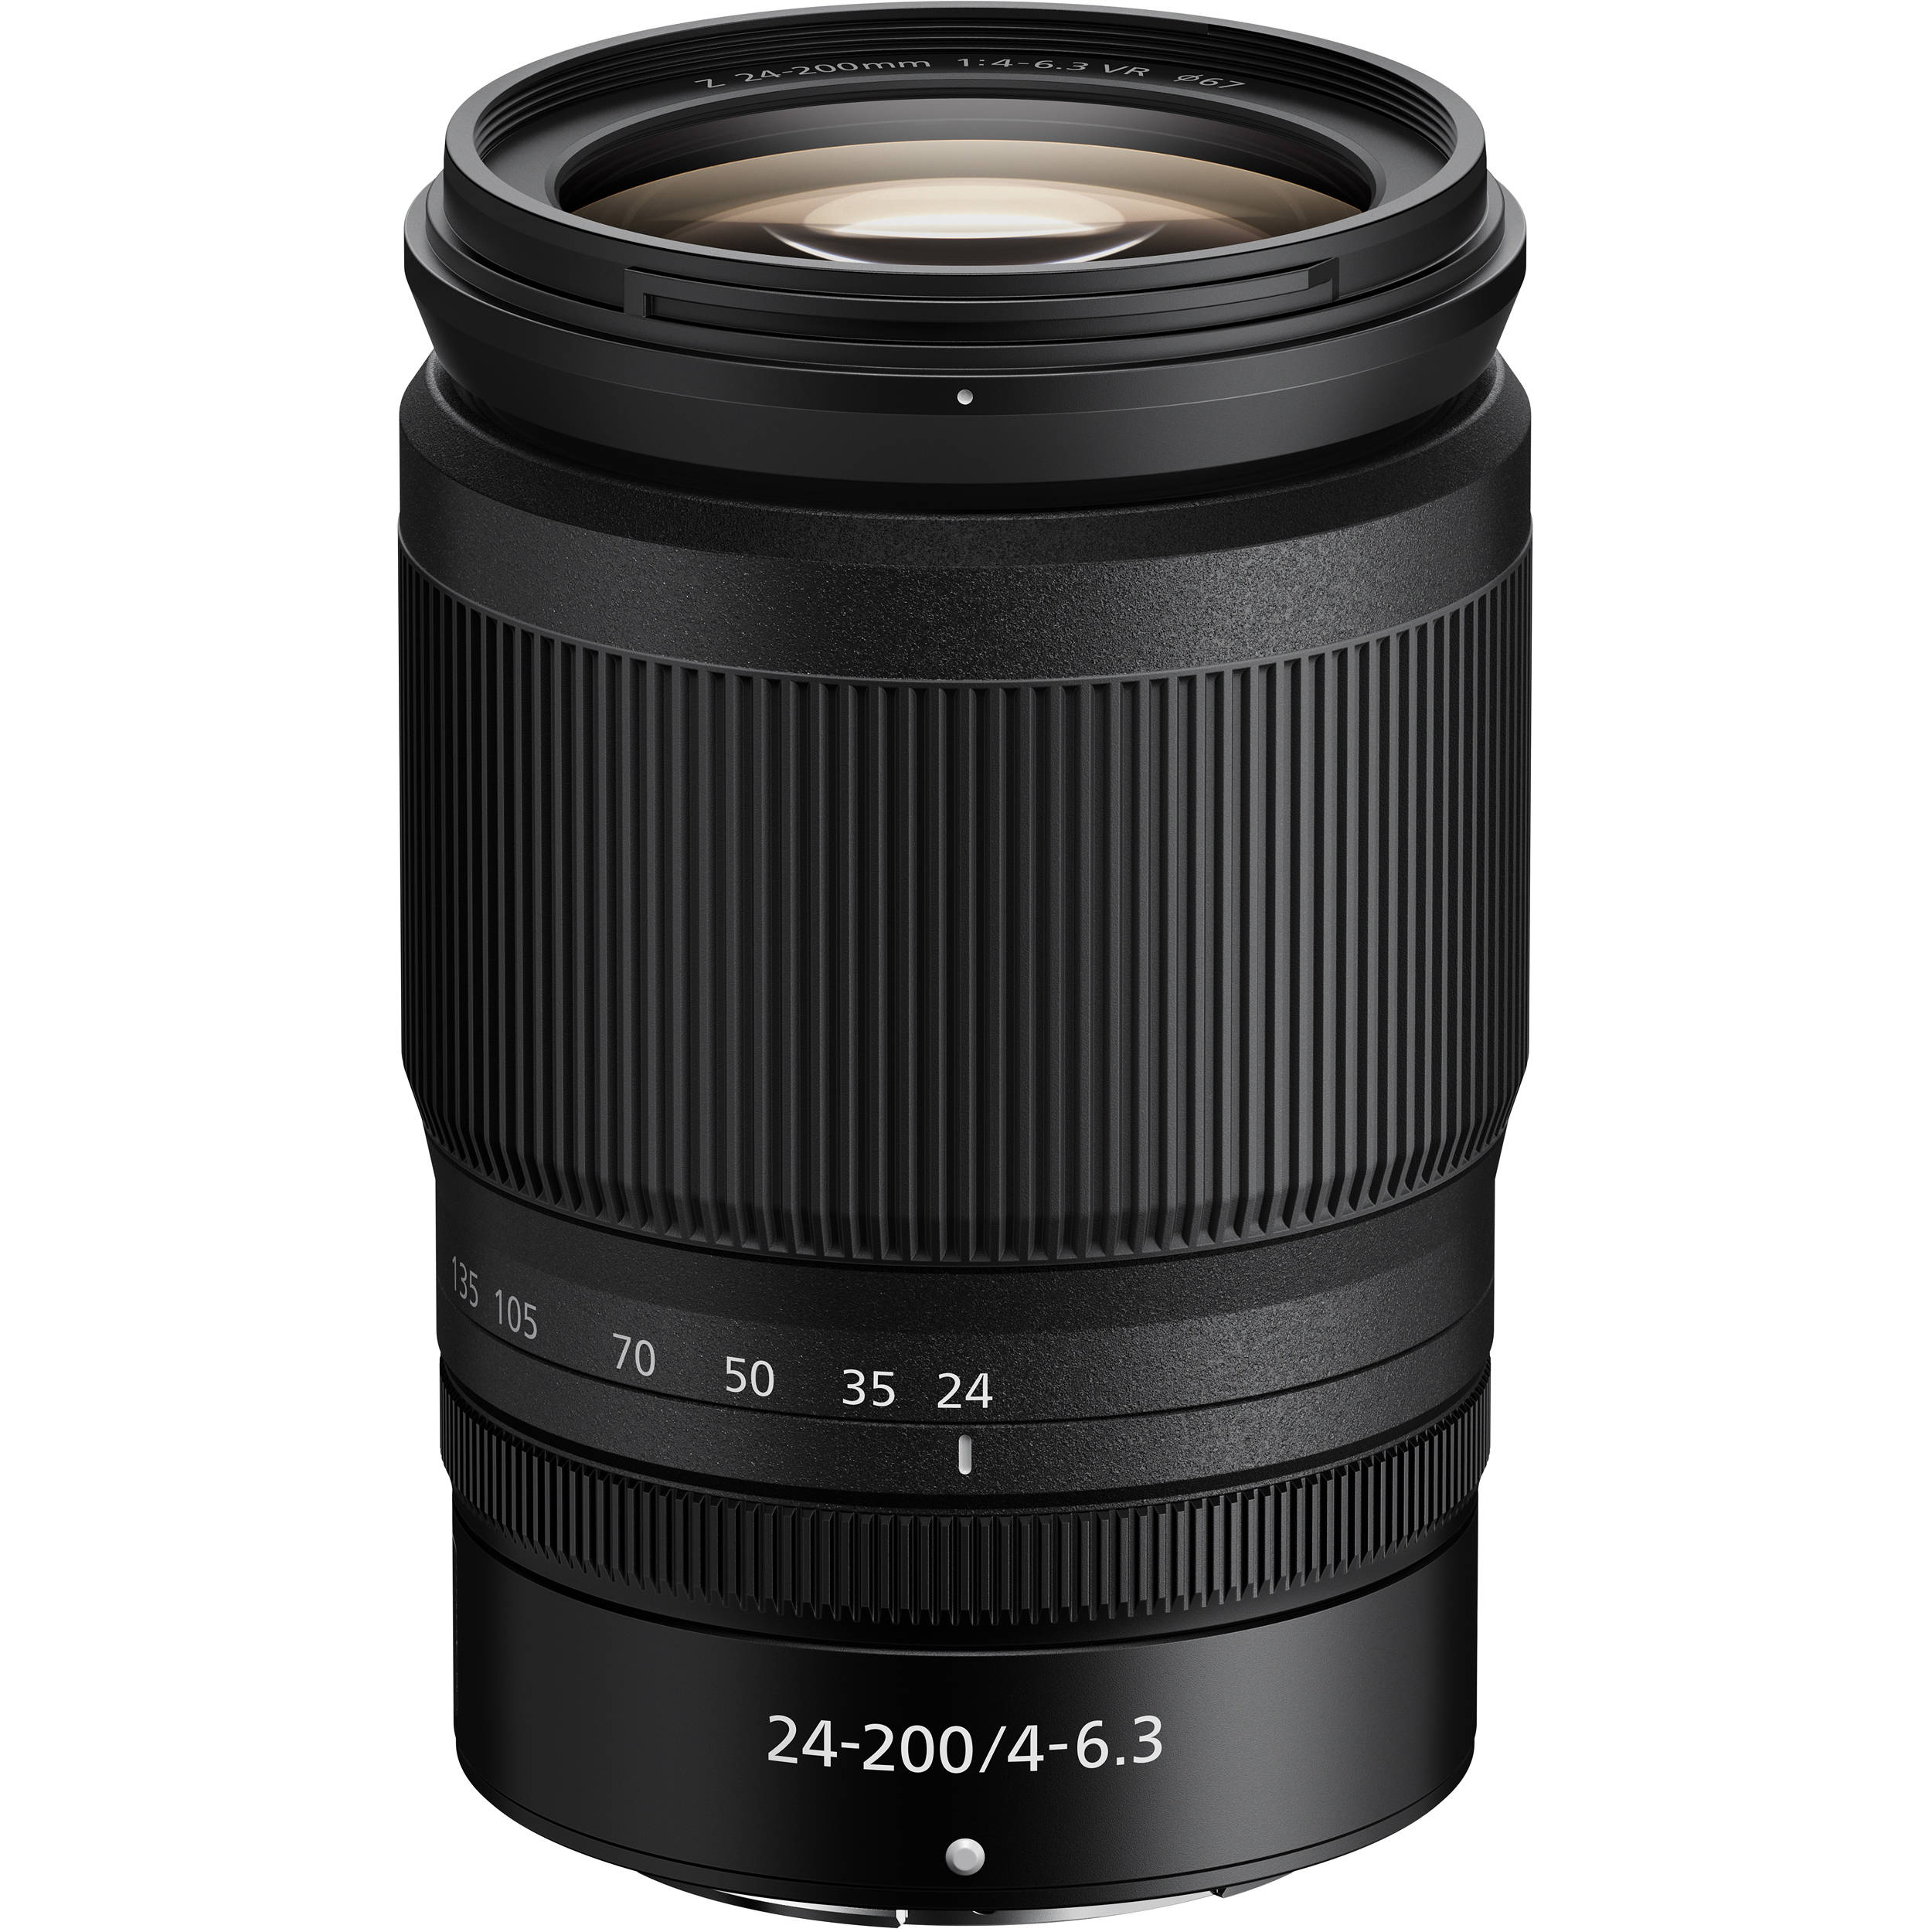 Nikon Z 24-200mm F4-6.3 VR (Mới 100%) Hàng VIC-VN Bảo hành chính hãng 02 năm toàn quốc Cover